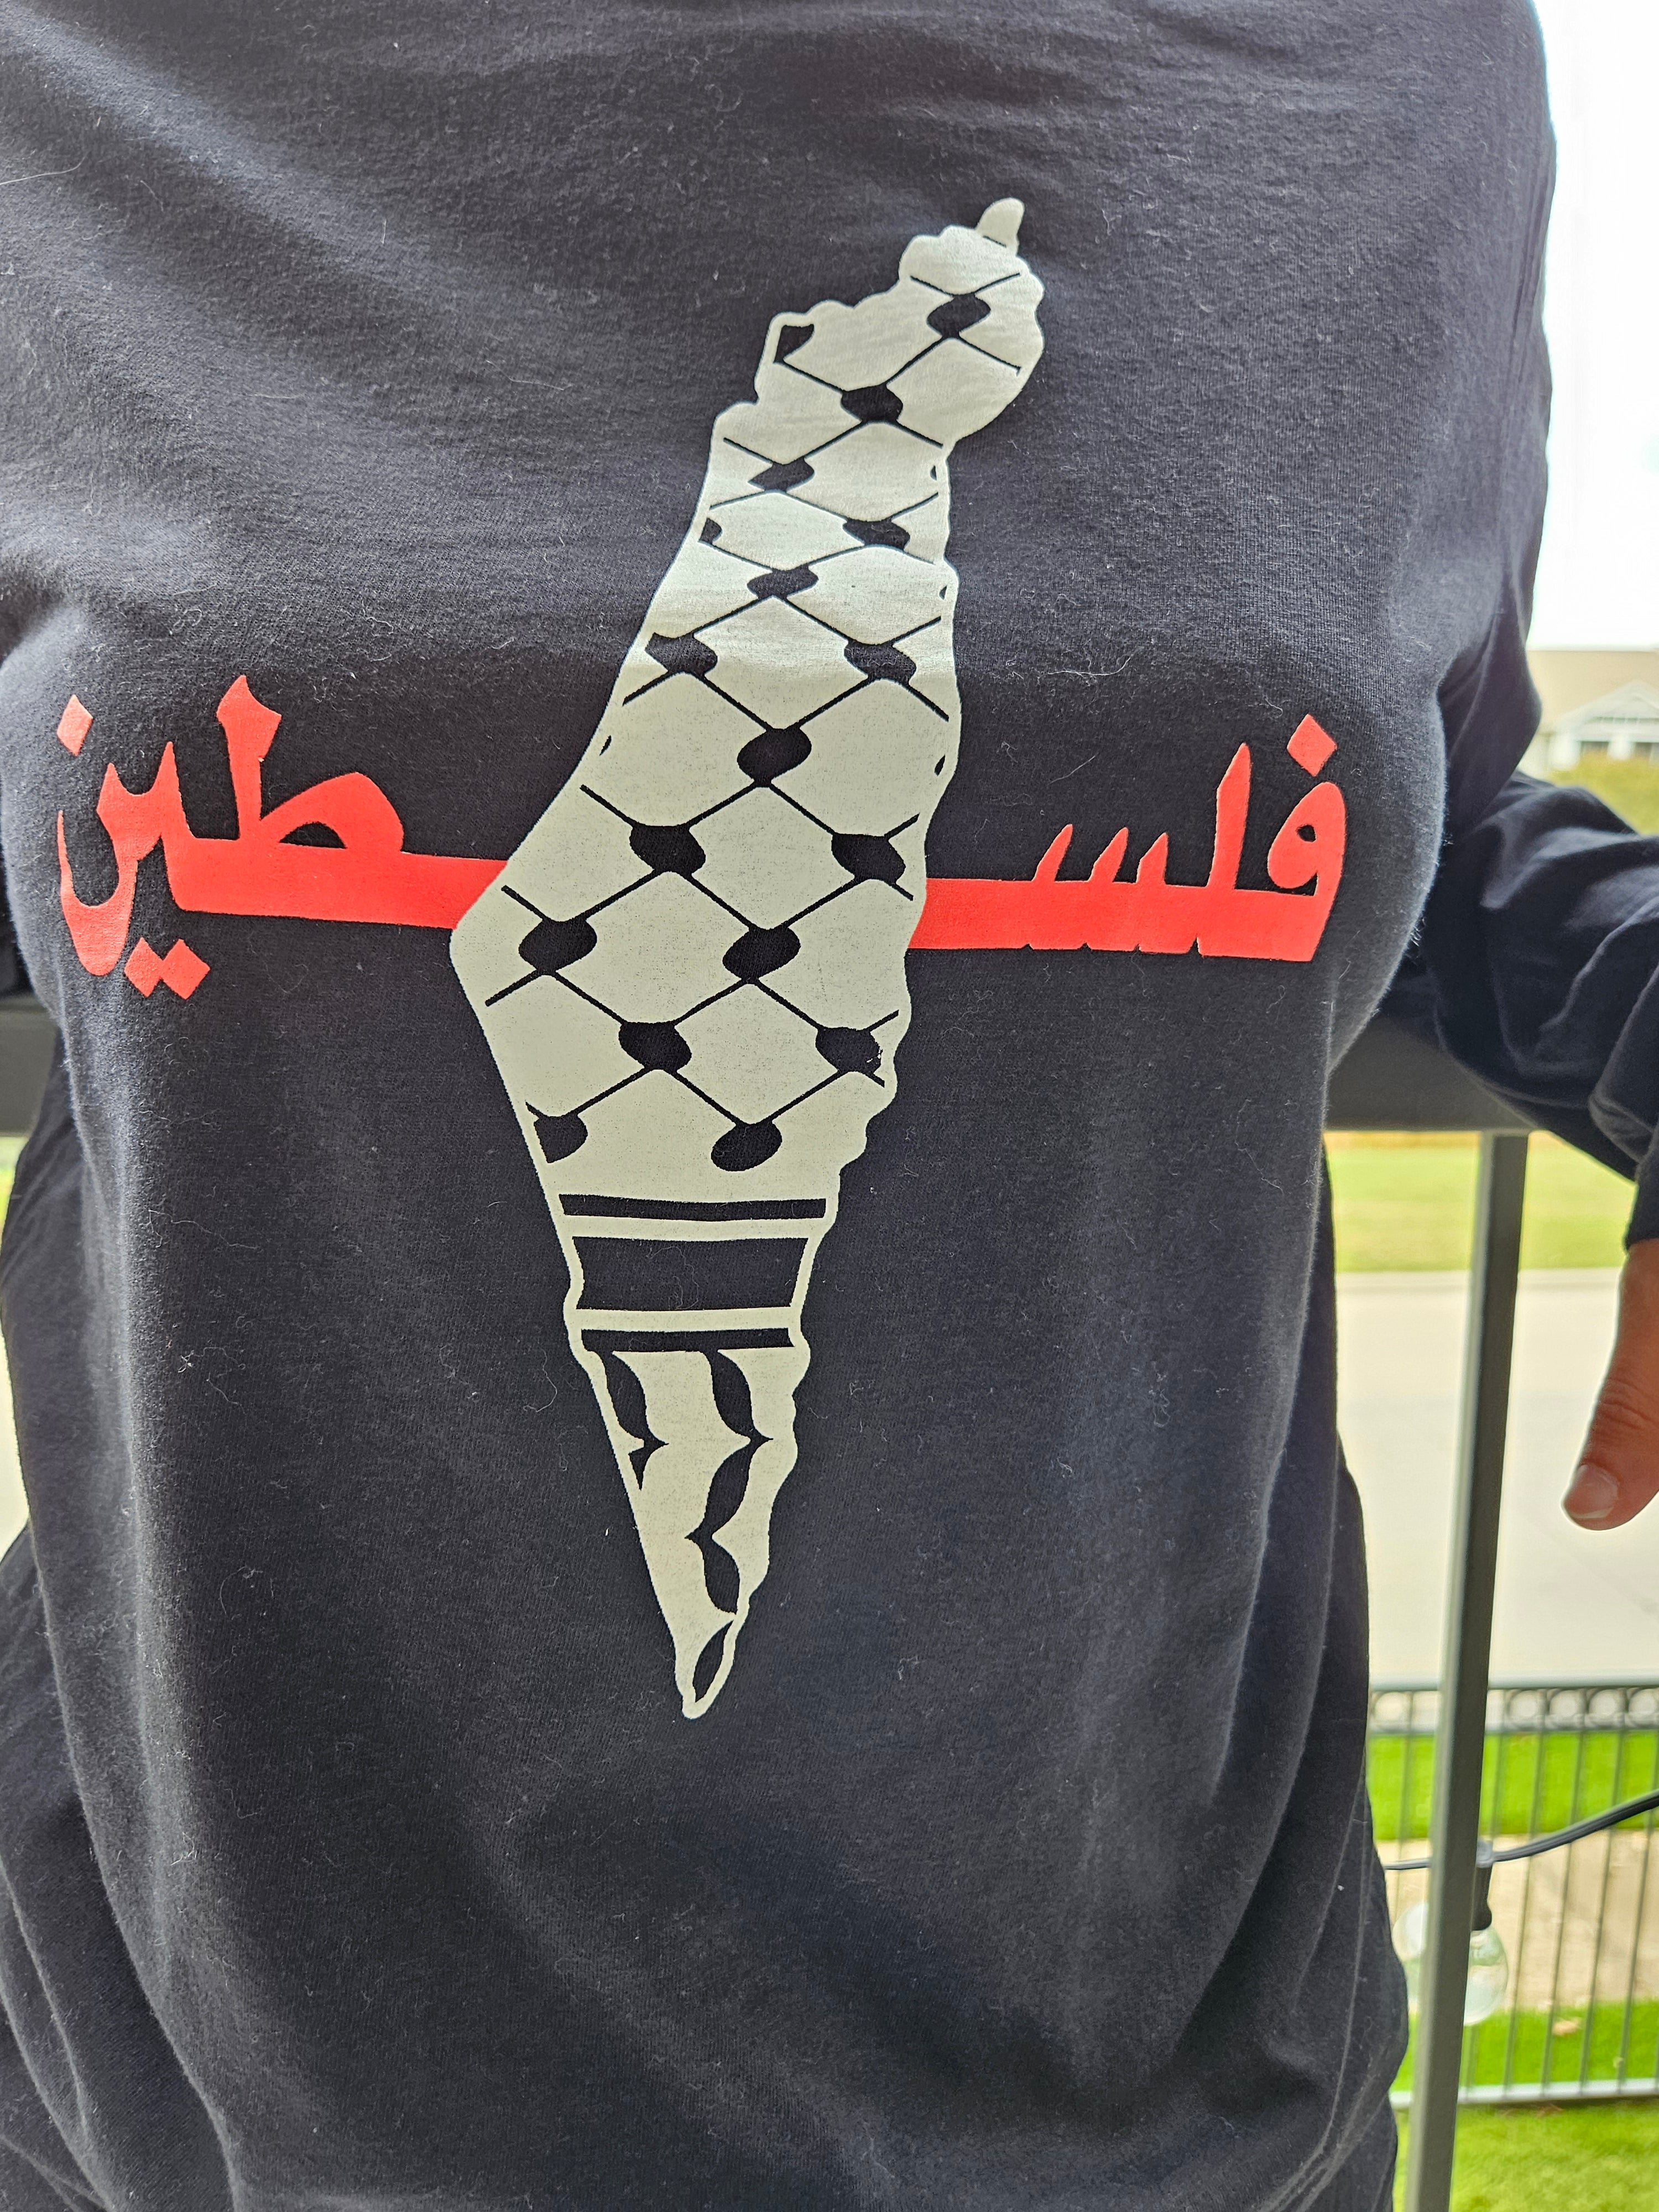 Palestine Keffiyeh Design Hoodie or Long Sleeve - Kids & Adult Size - Habibi Heritage